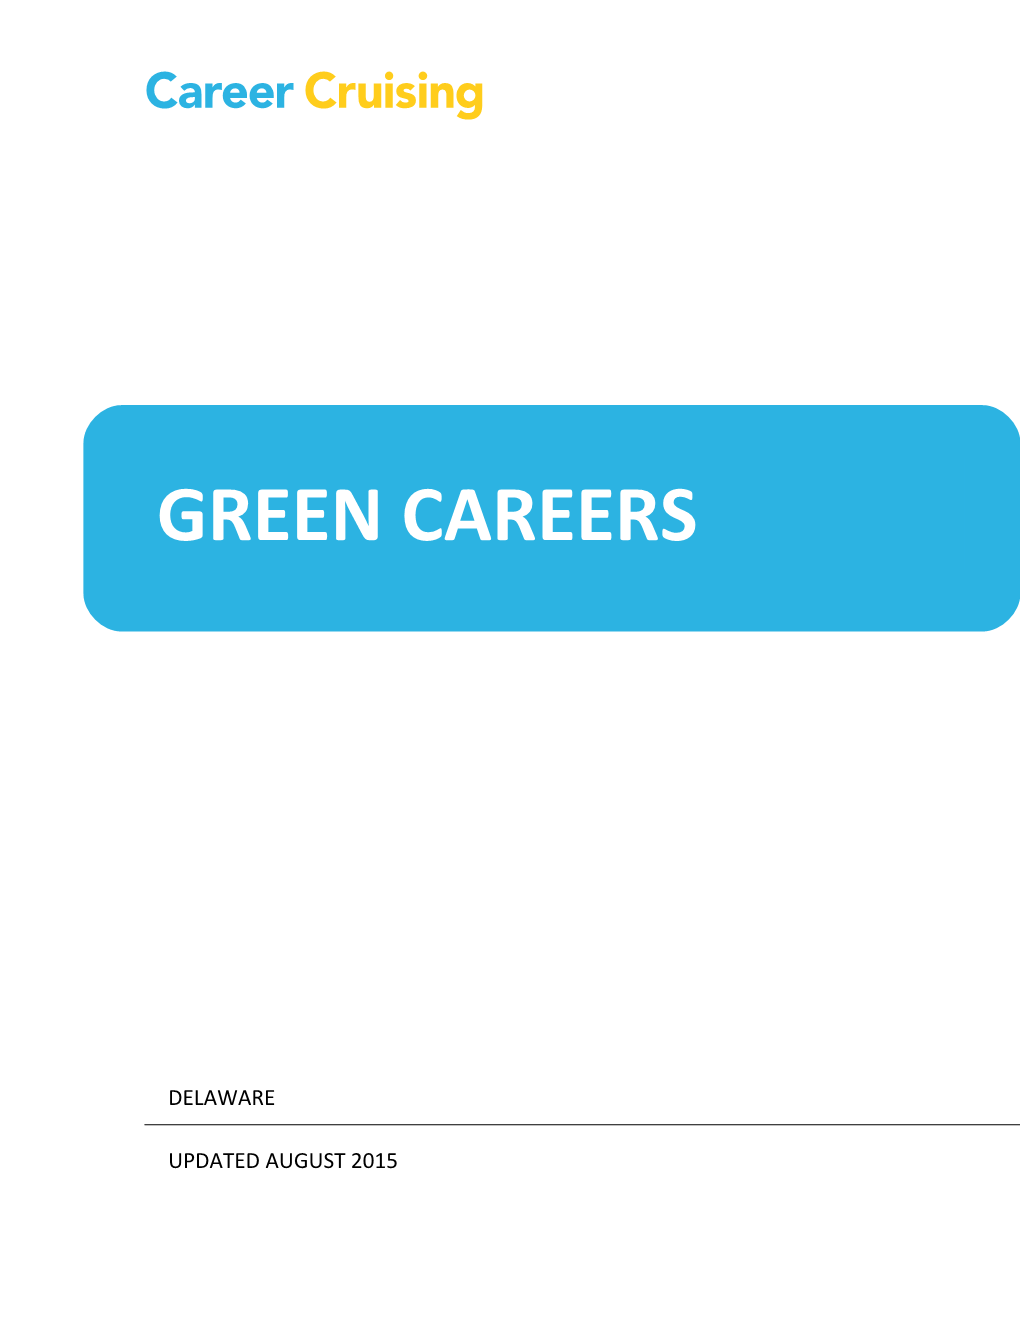 Green Careers Activity 1: Green Goals